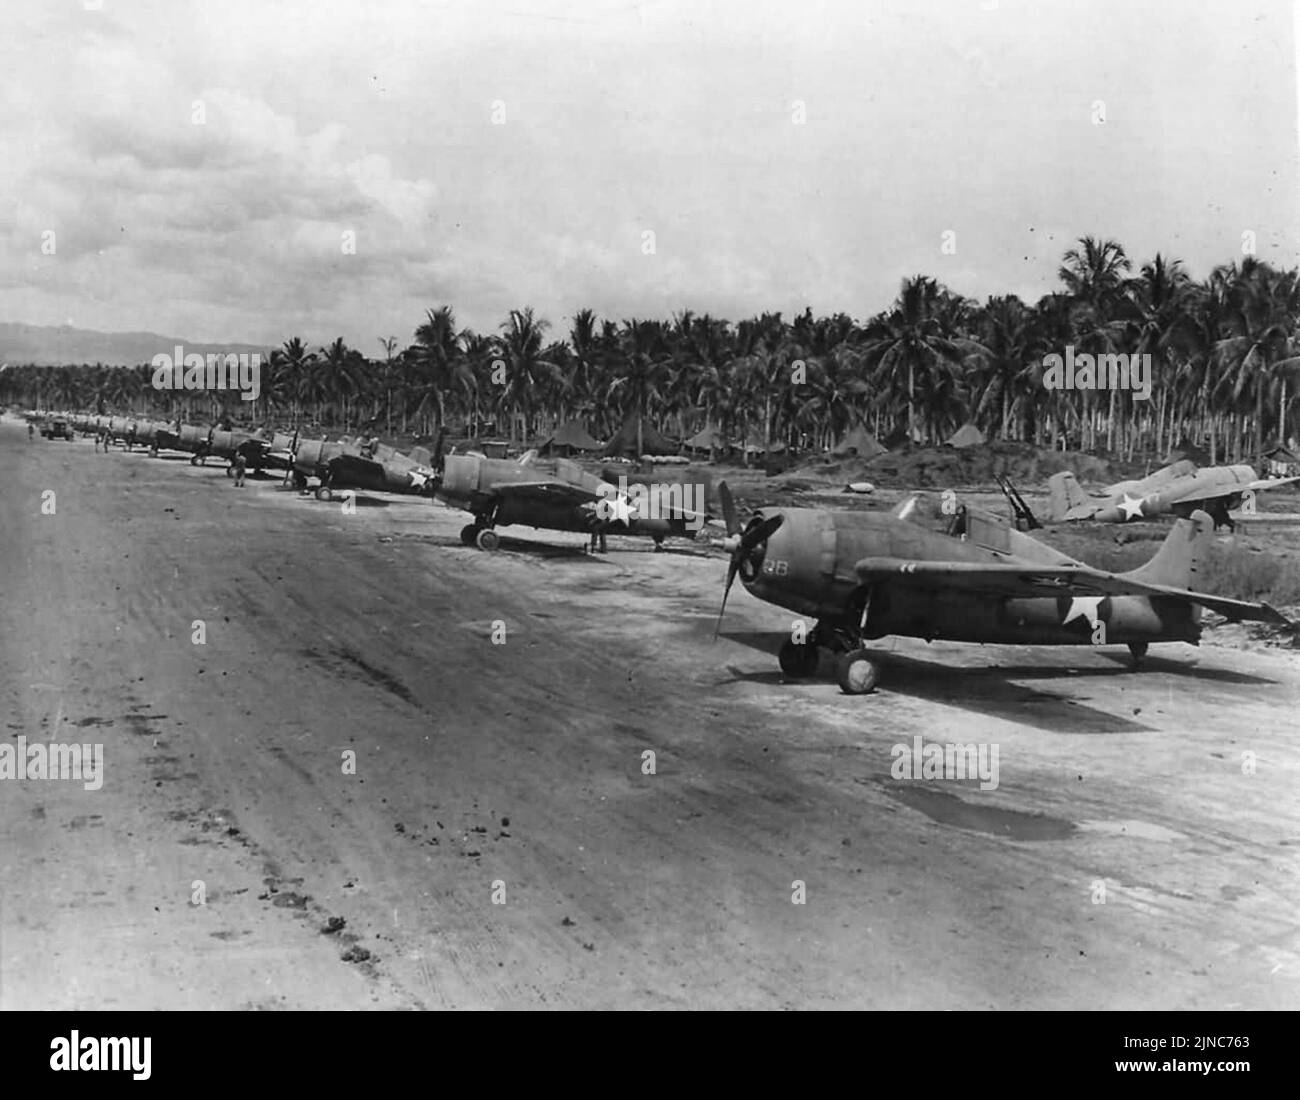 Grumman F4F-4 Wildcats en el Campo Henderson en Guadalcanal, parte de la Fuerza Aérea de Cactus. La Fuerza Aérea de Cactus fue el apodo de la unidad de aviación que se basó en esta pista de aterrizaje durante WW2. Foto de stock